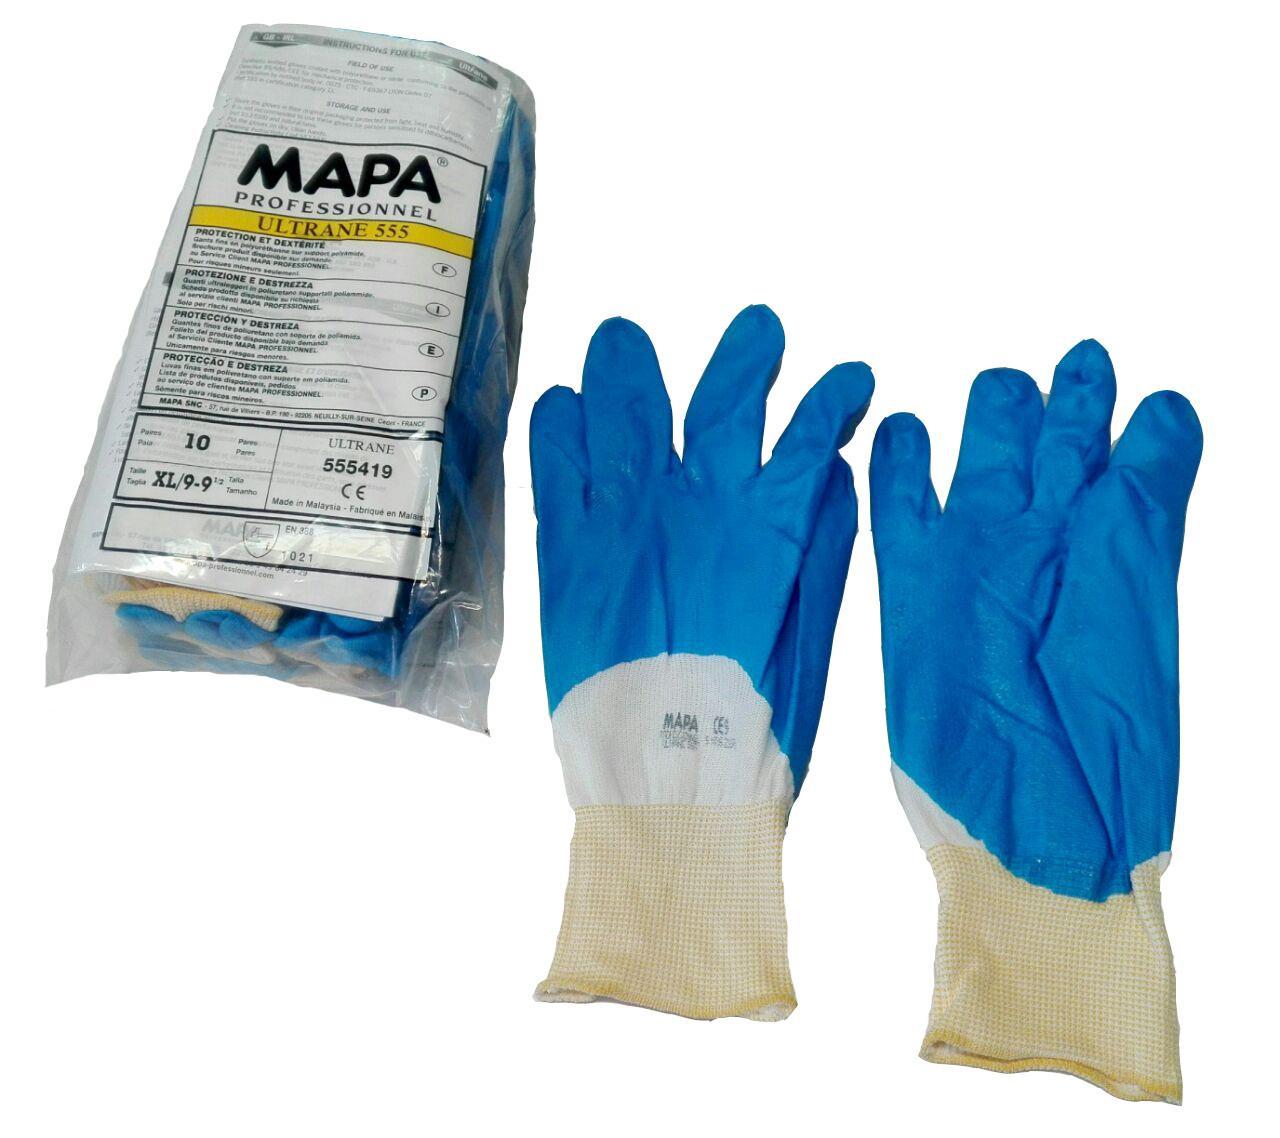 دستکش MAPA 555 (ماپا 555)